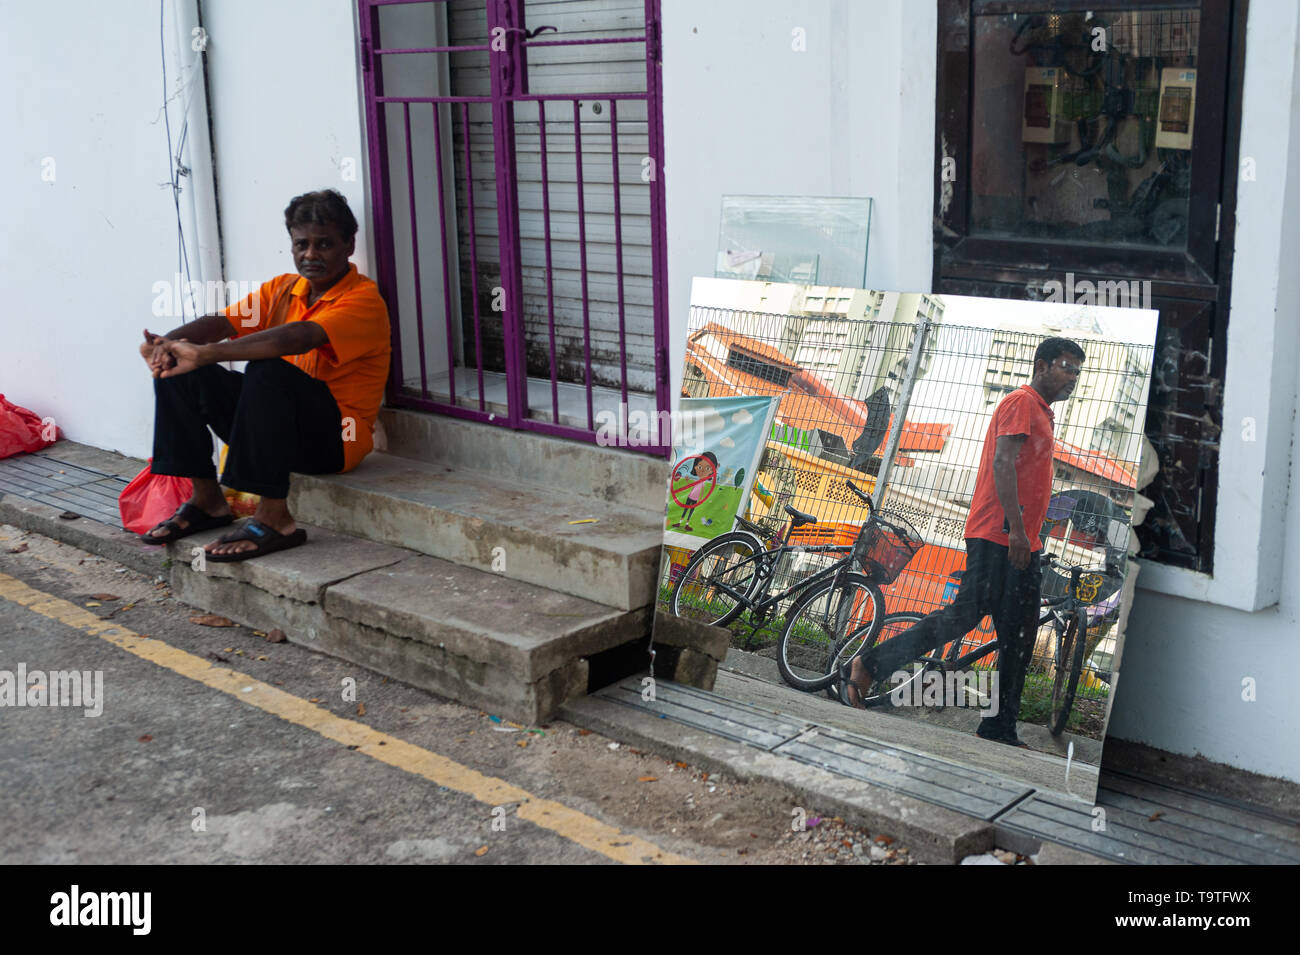 10.05.2019, Singapour, République de Singapour, en Asie - Un homme est assis au bord de la route dans la région de Little India comme un passant se reflète dans un miroir. Banque D'Images